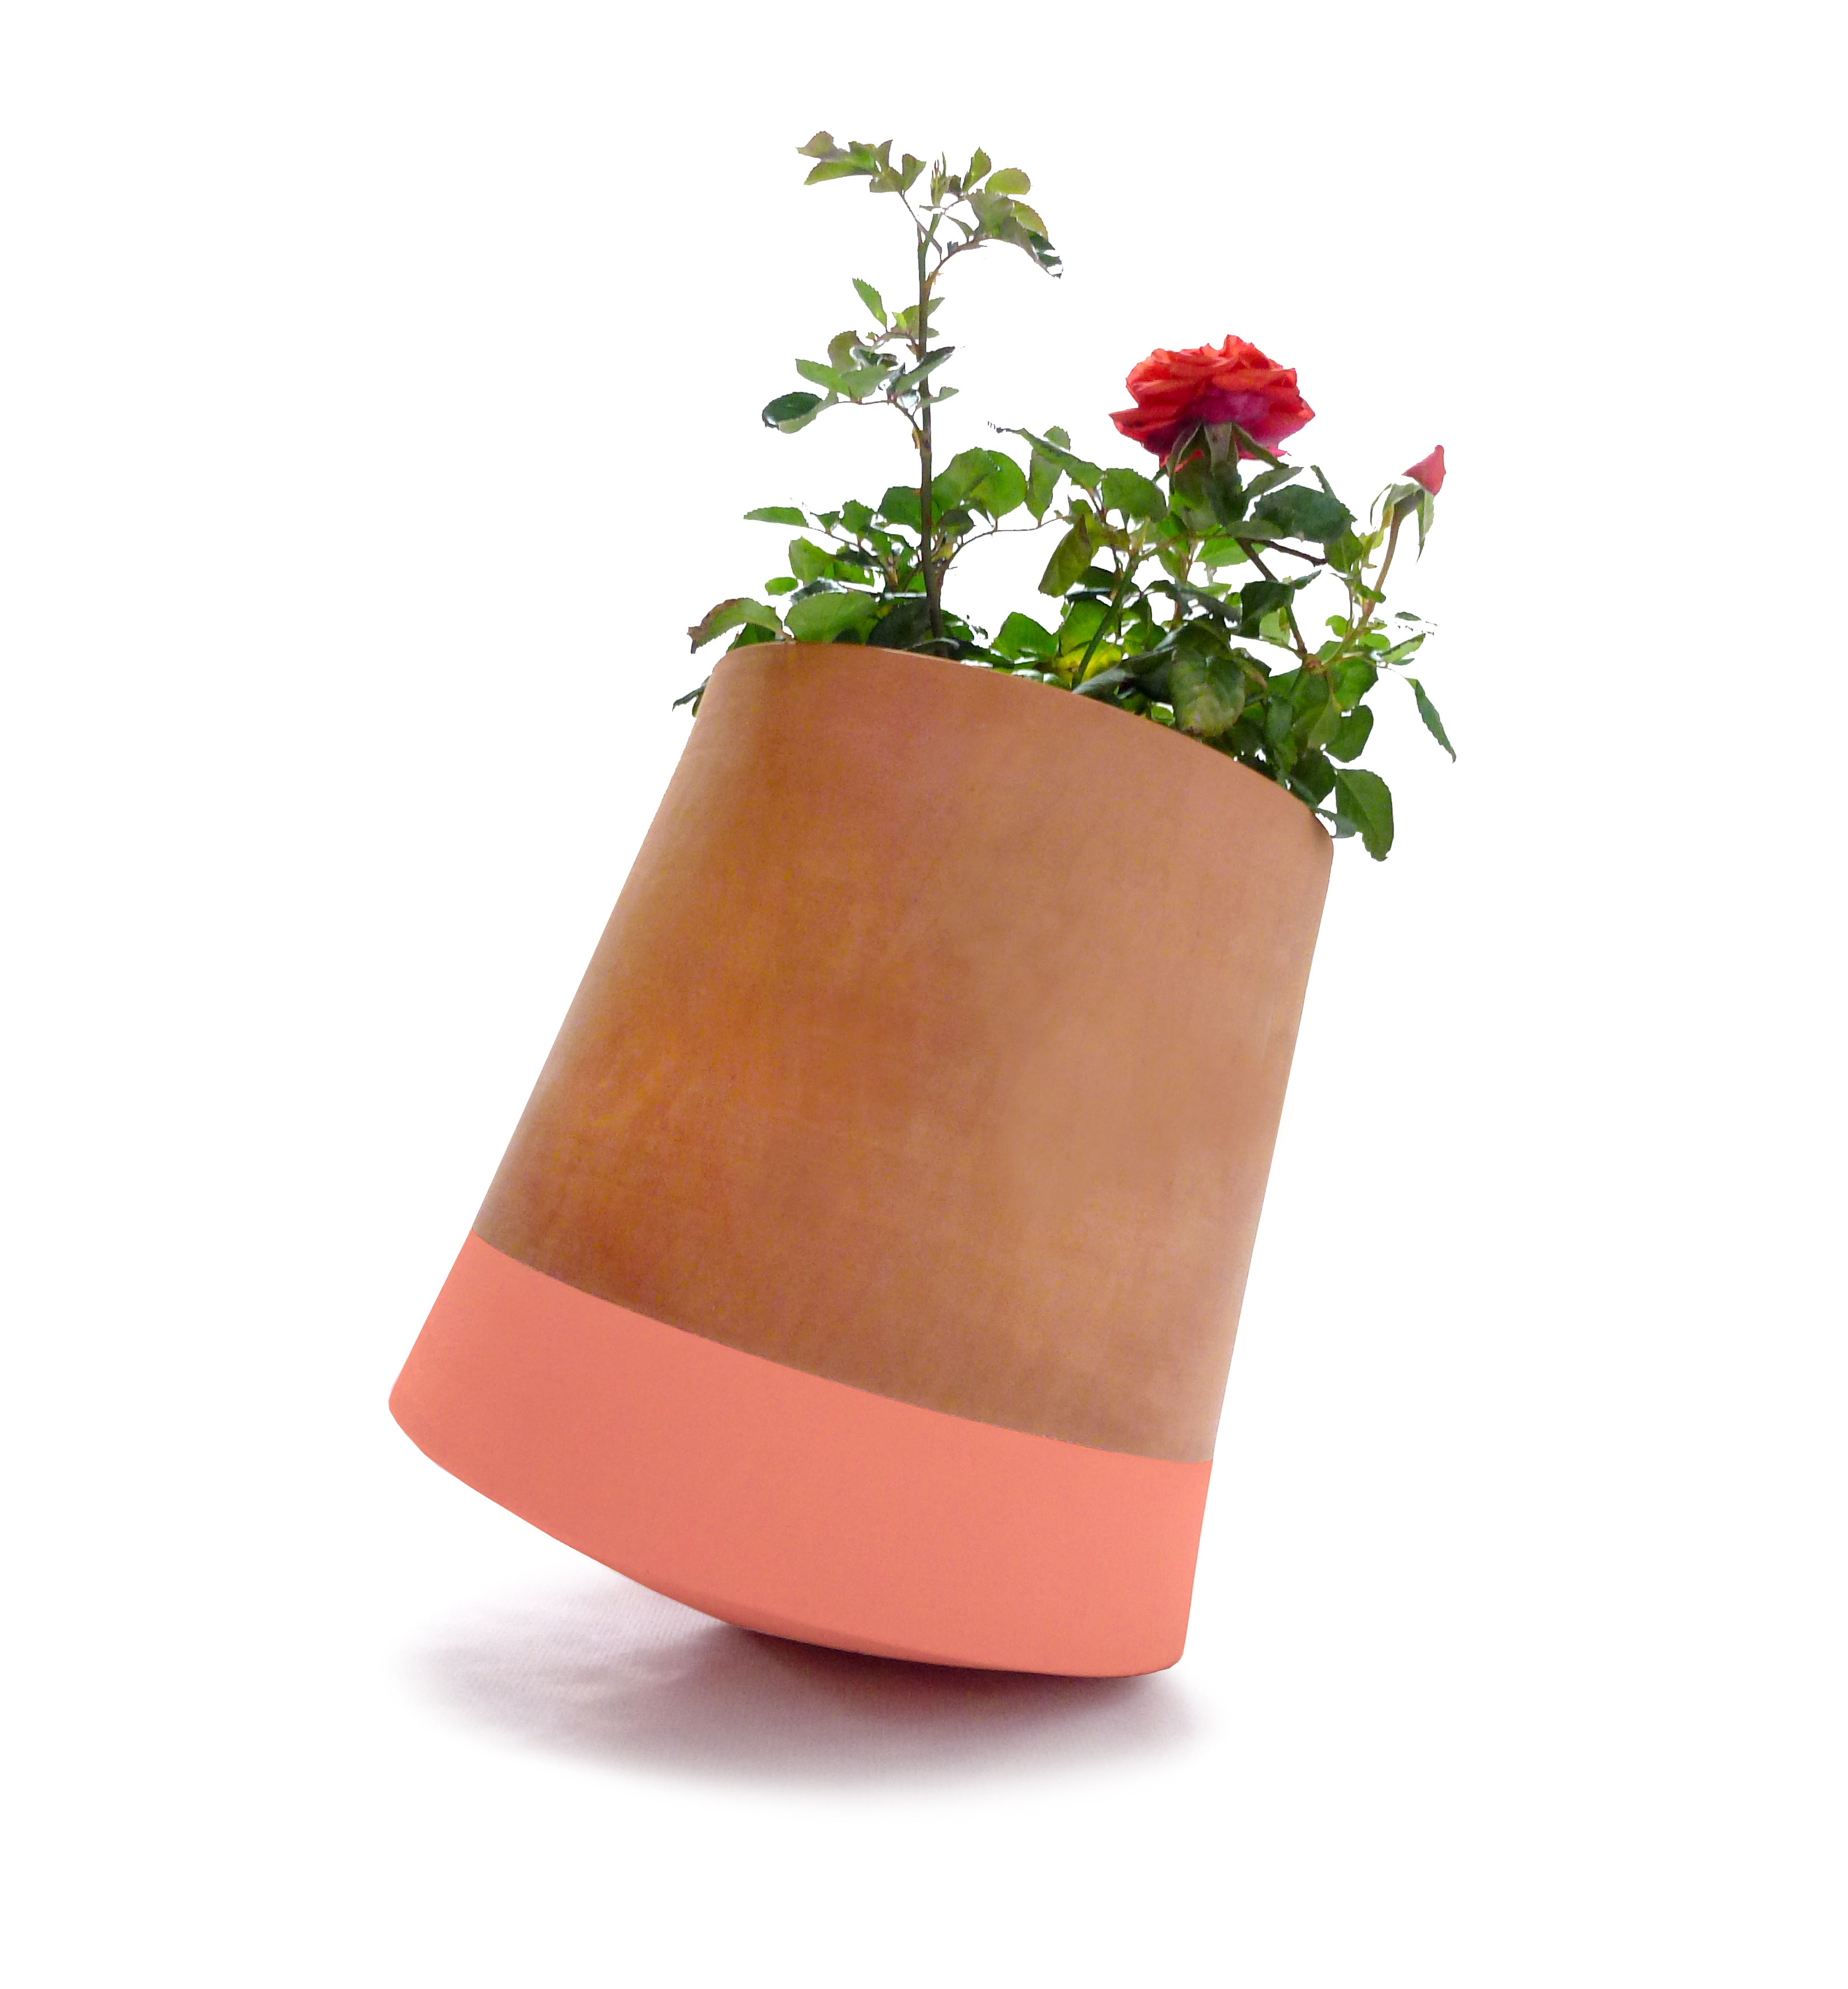 Voltasol flowerpot with flowers